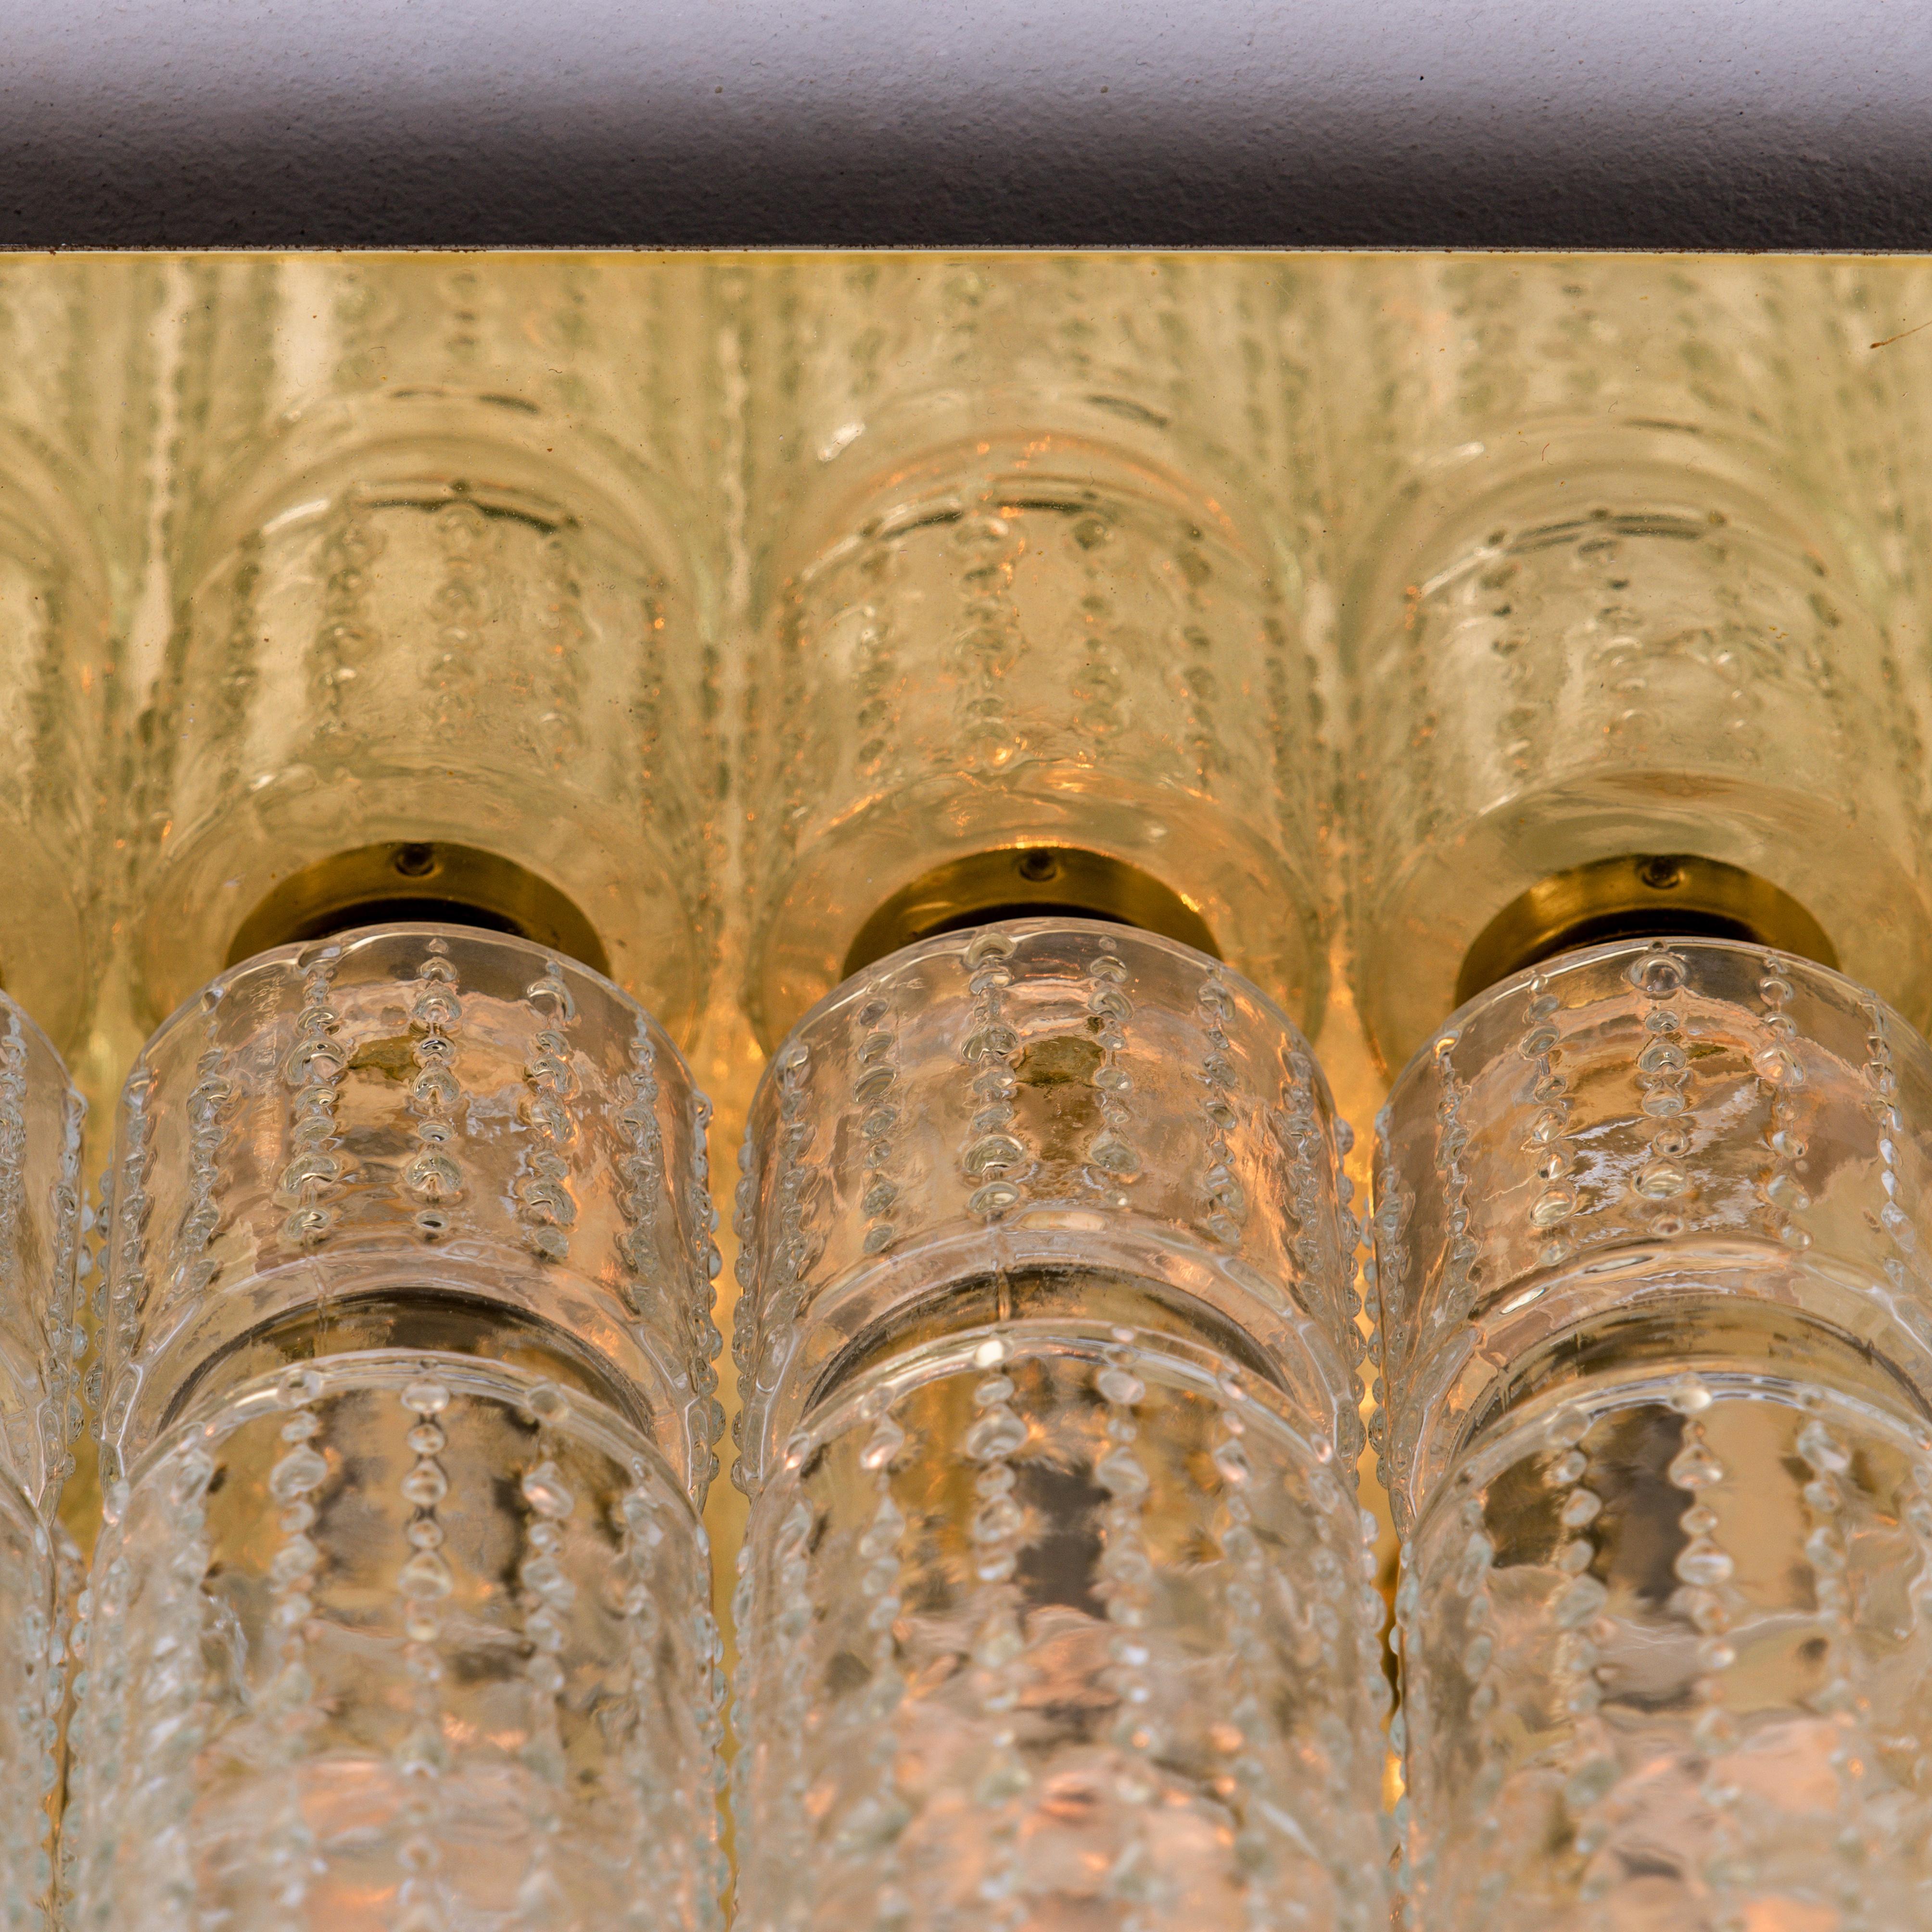 Einer der sechs erstaunlichen Flushmount-Kronleuchter mit 24 hängenden, mundgeblasenen, strukturierten Hohlglasprismen auf einem Messingrahmen. Hergestellt von Glashütte Limburg in Deutschland, entworfen von Boris Tabacoff in den 1970er Jahren.